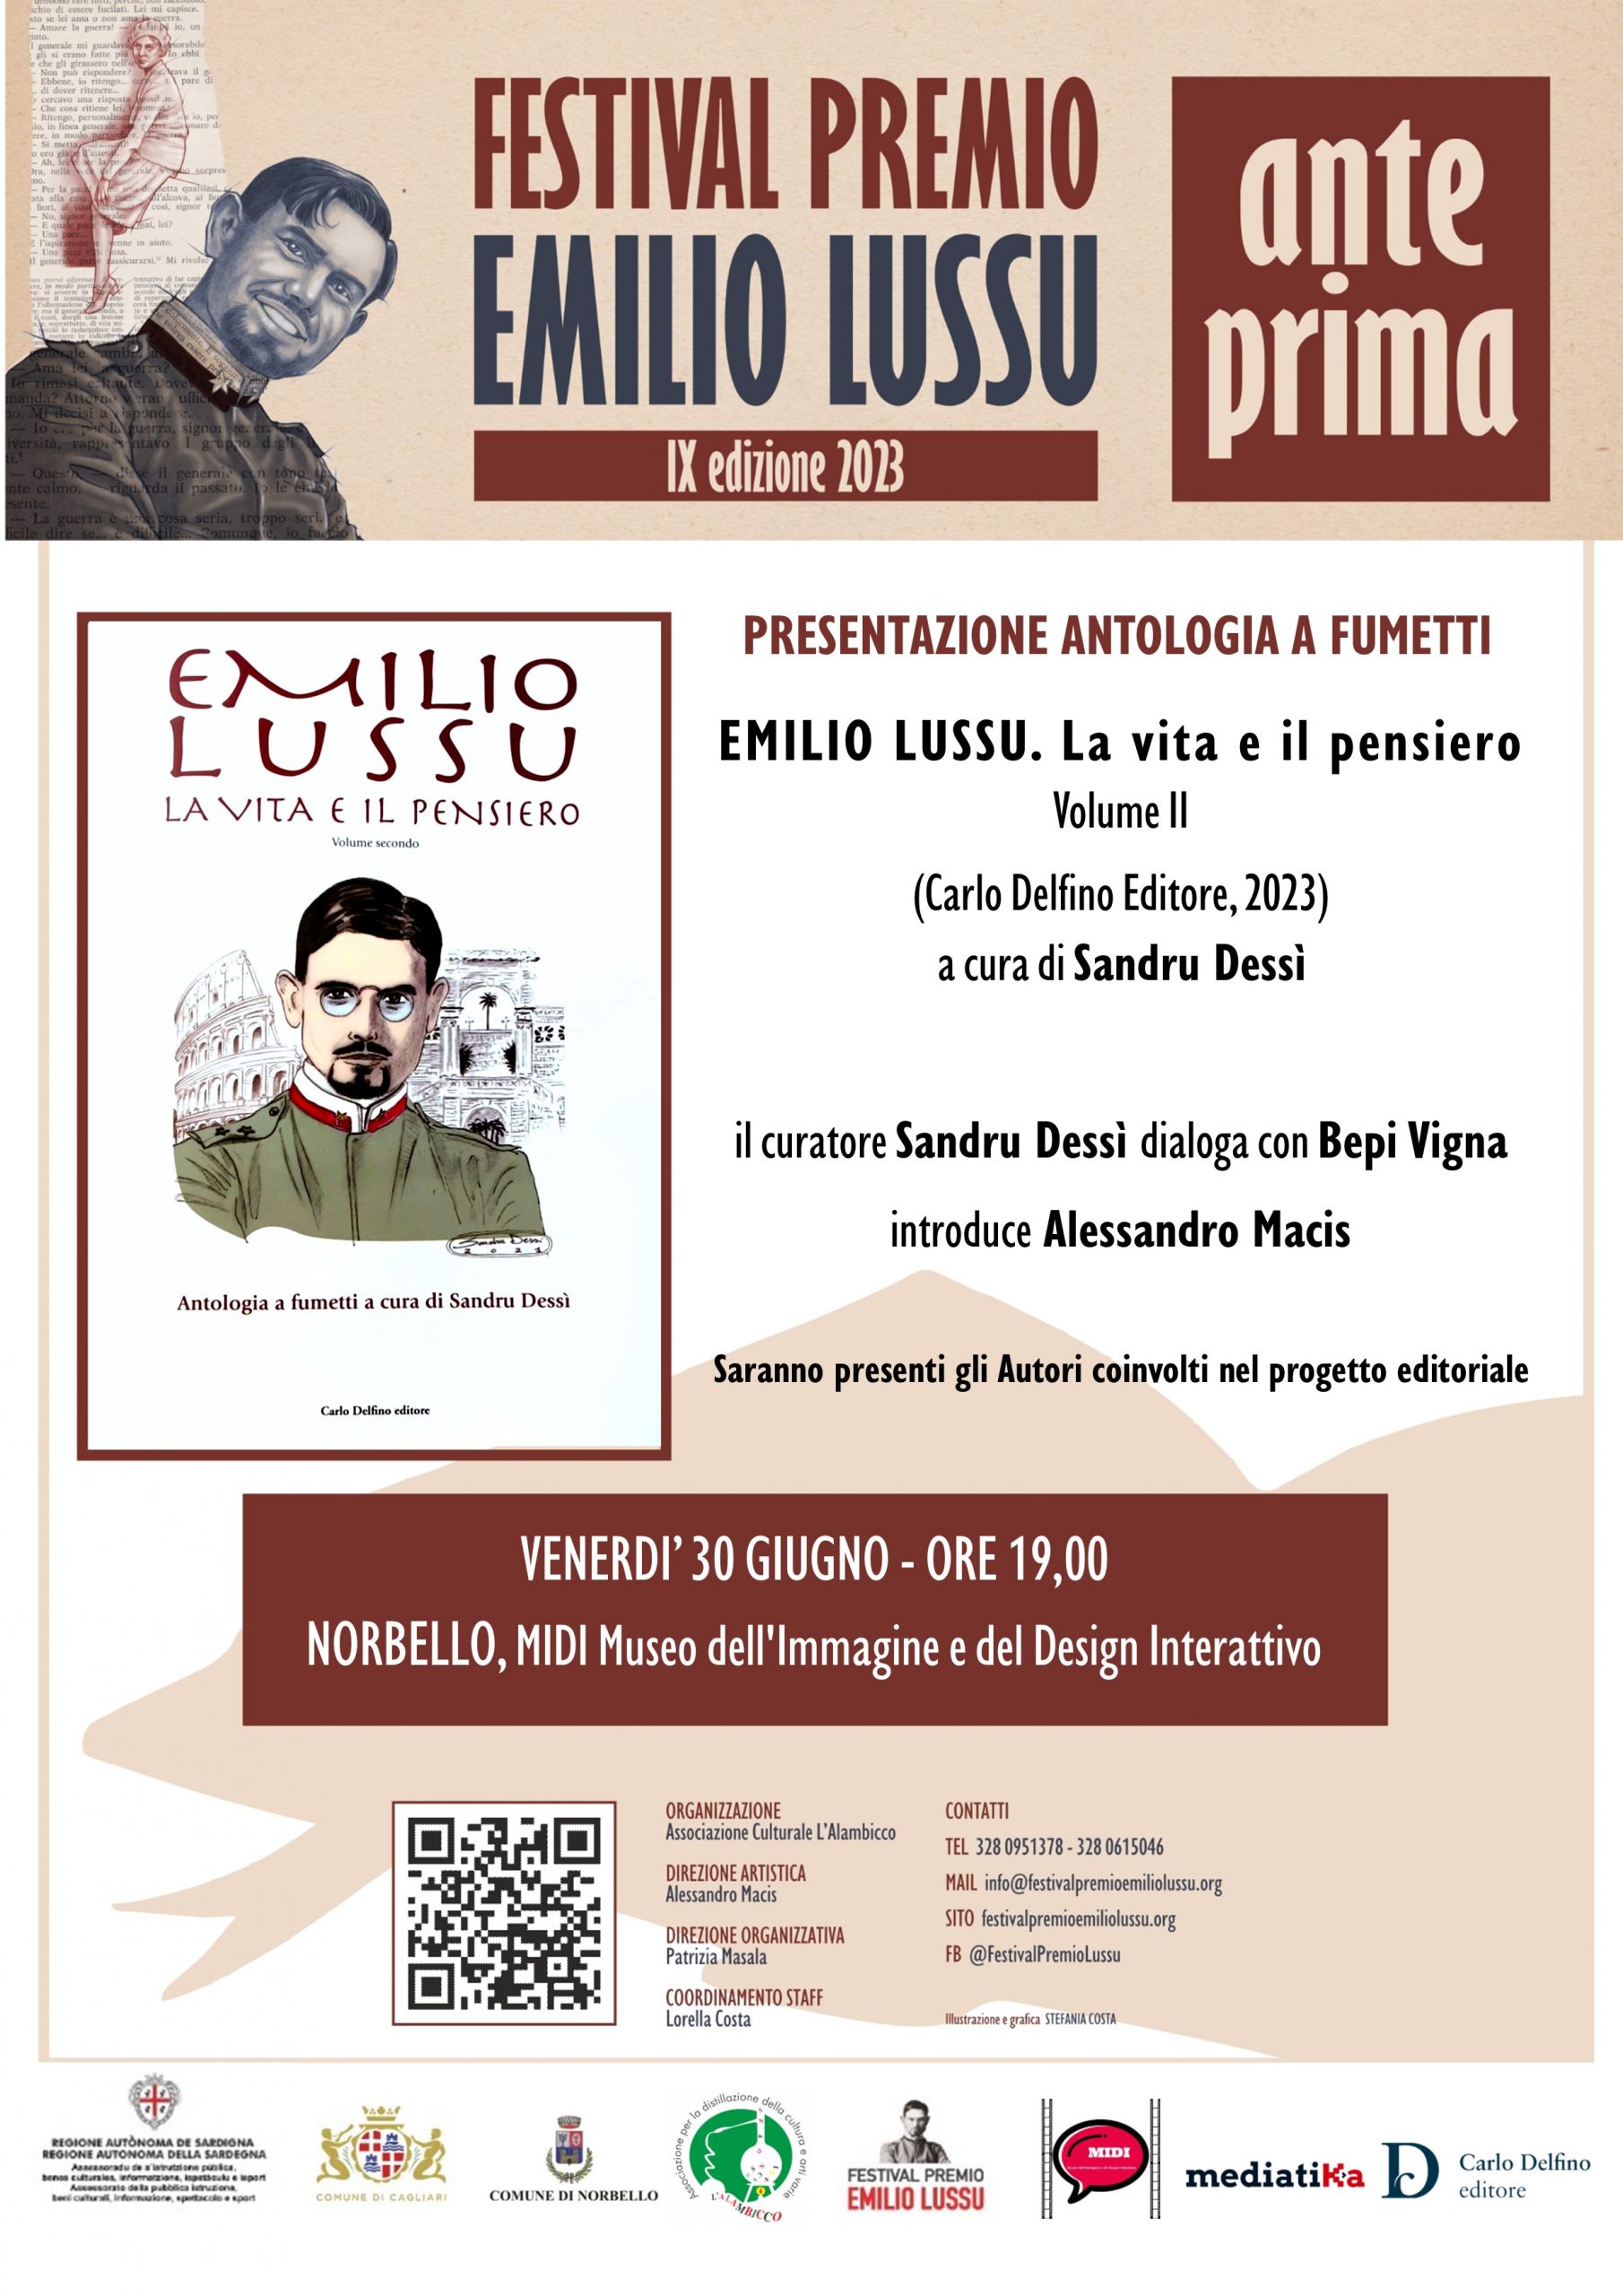 Anteprima IX Edizione A Norbello. Presentazione Antologia A Fumetti “Emilio Lussu. La Vita E Il Pensiero”